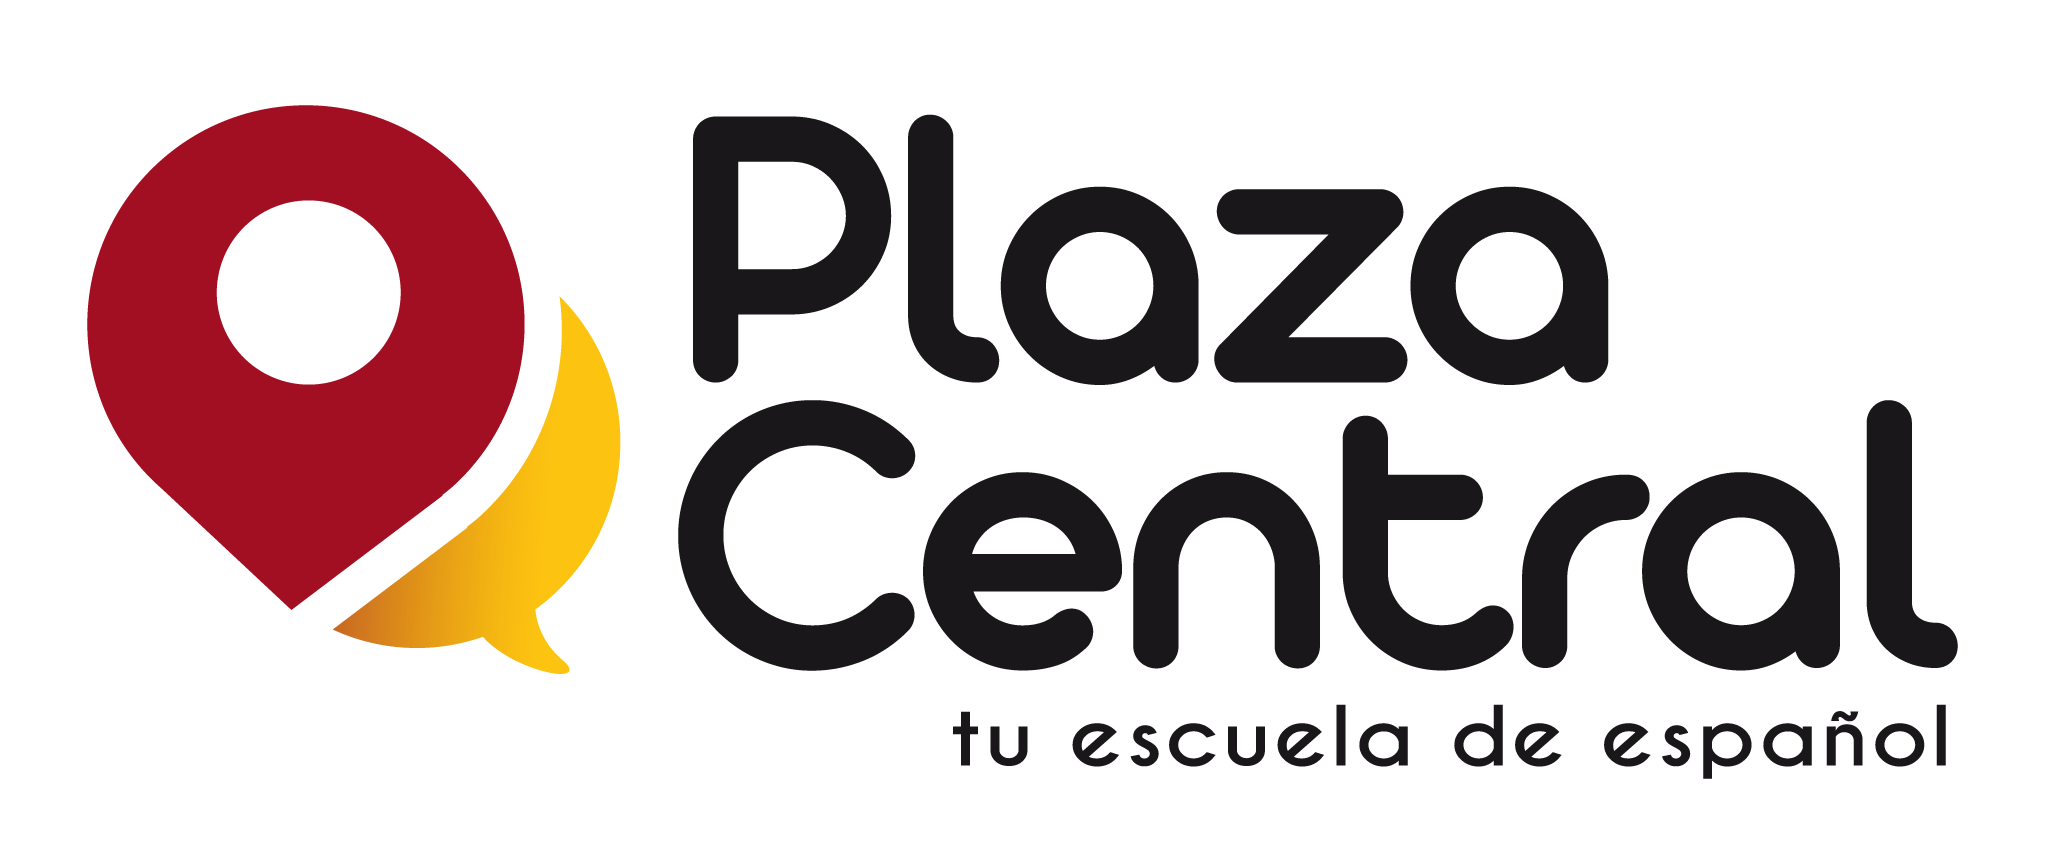 logo plaza central scuola di spagnolo